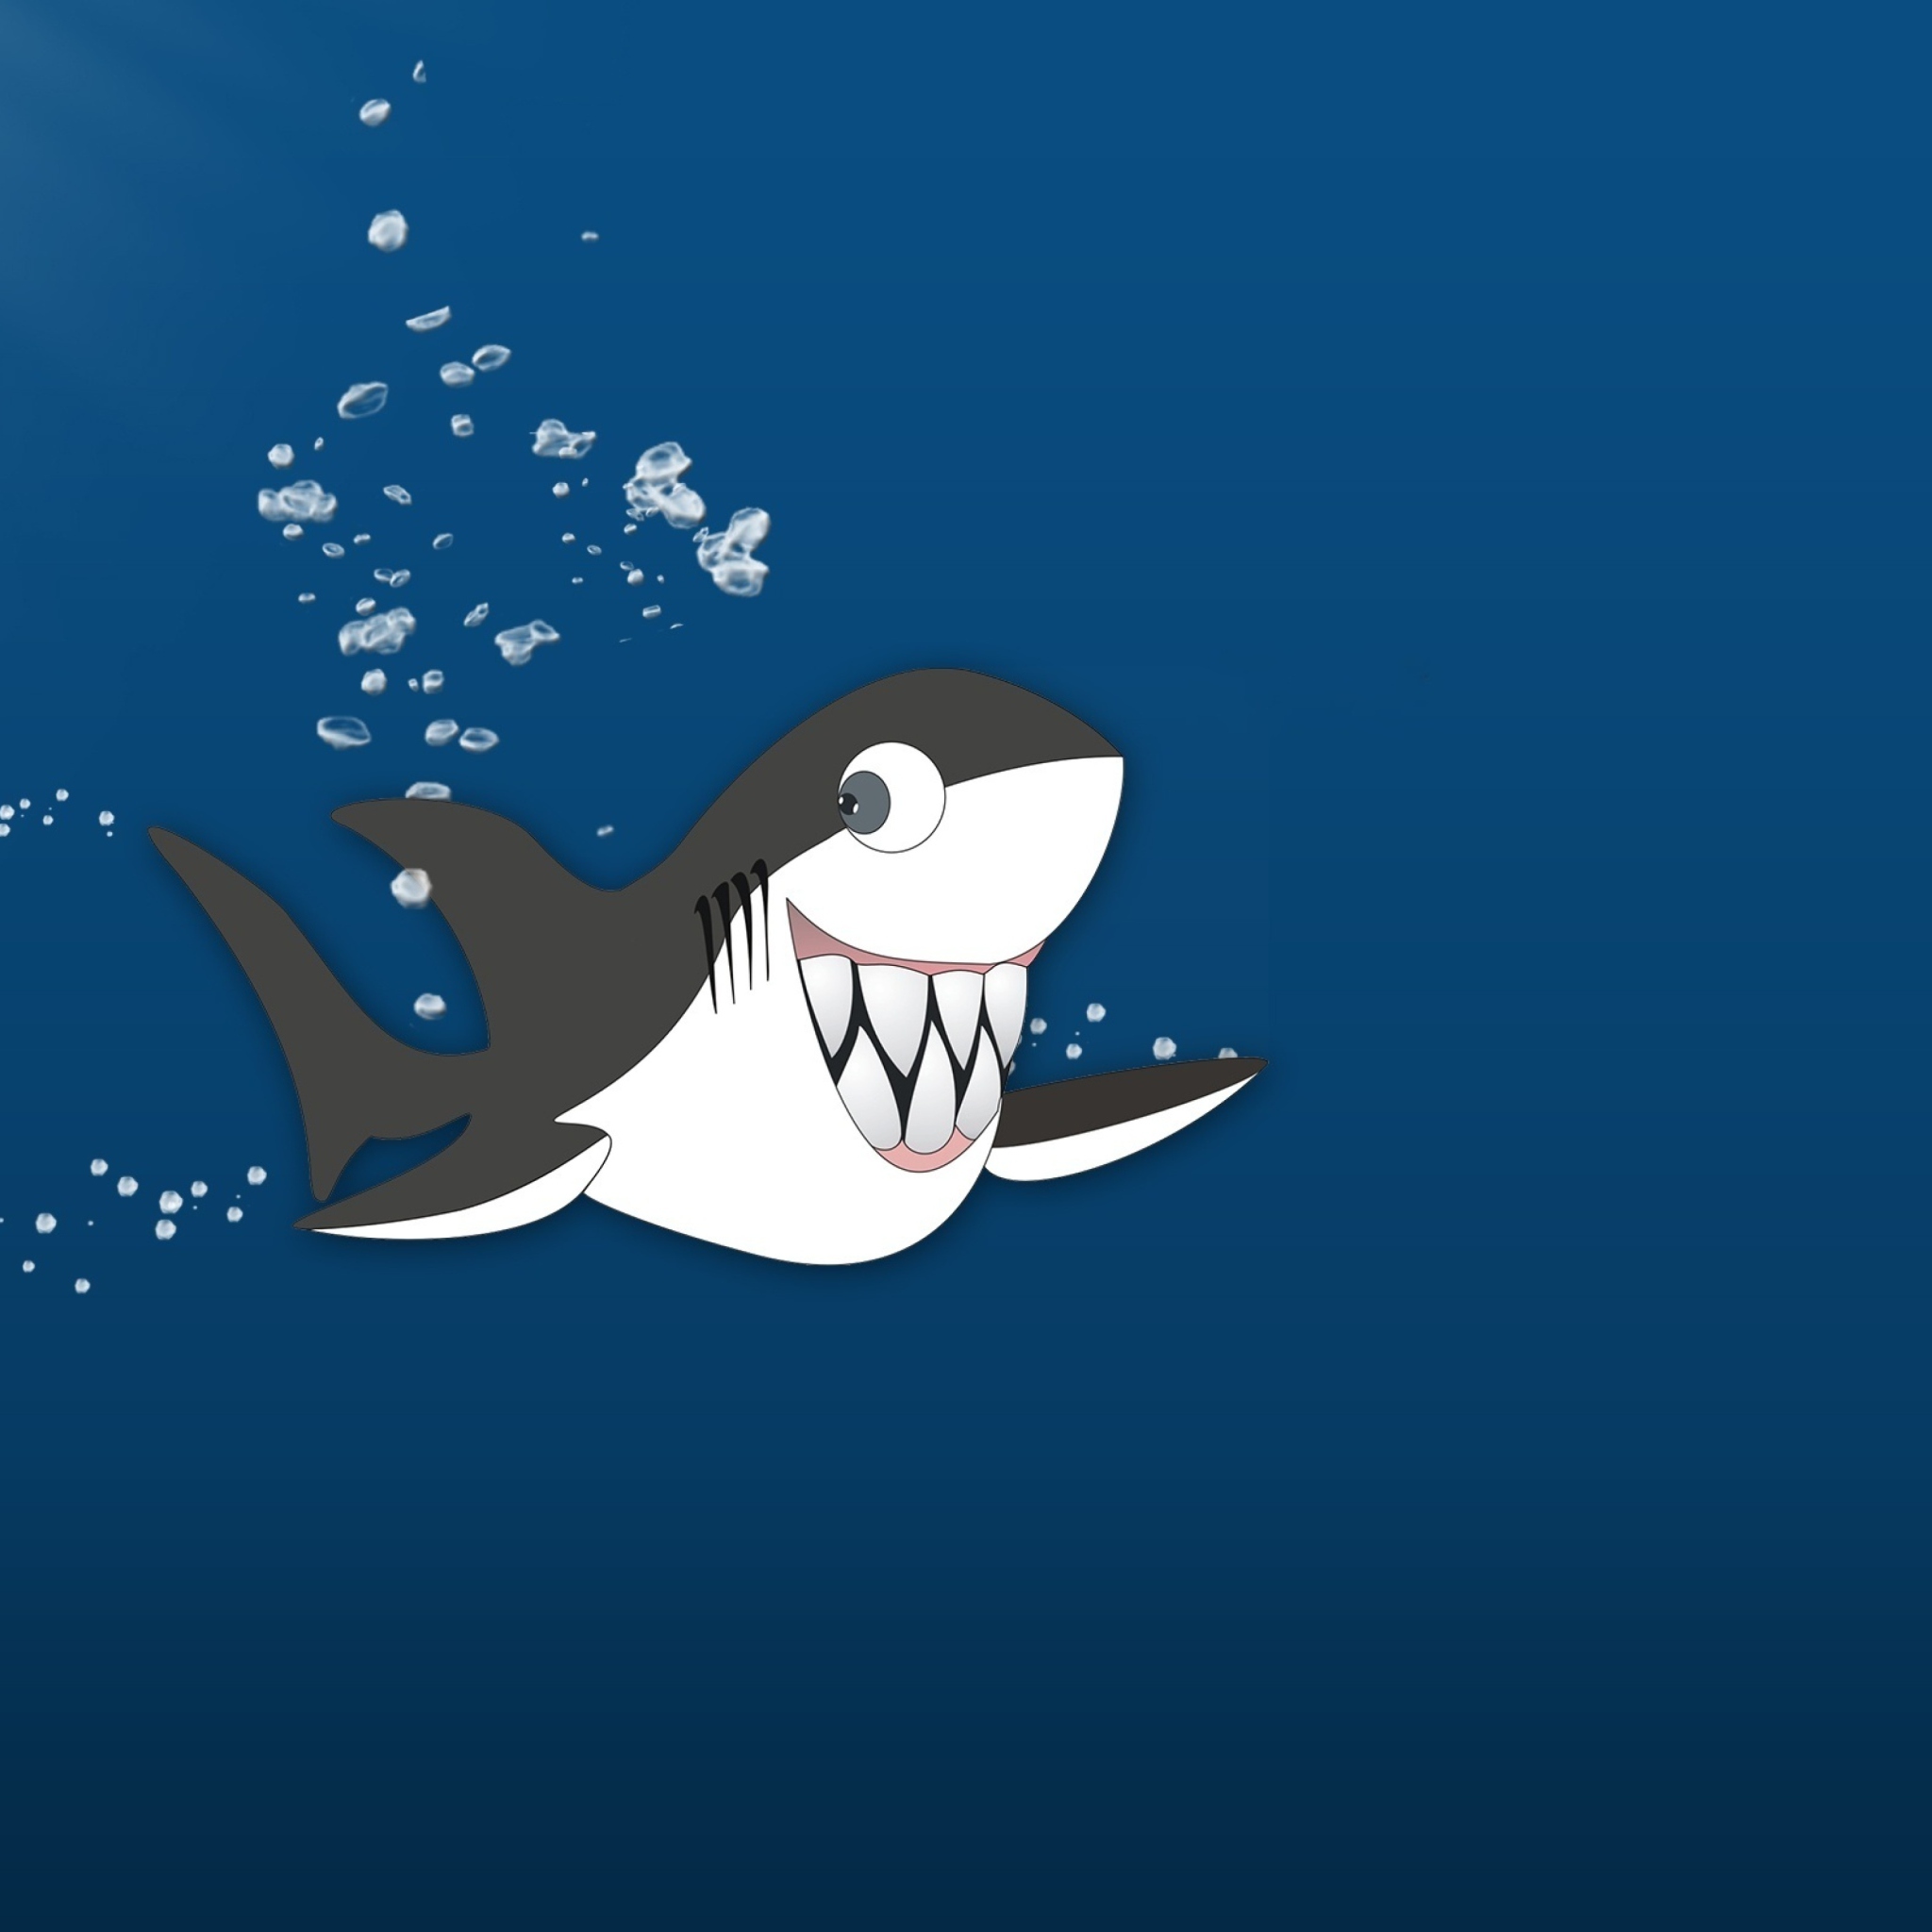 Funny Shark wallpaper 2048x2048